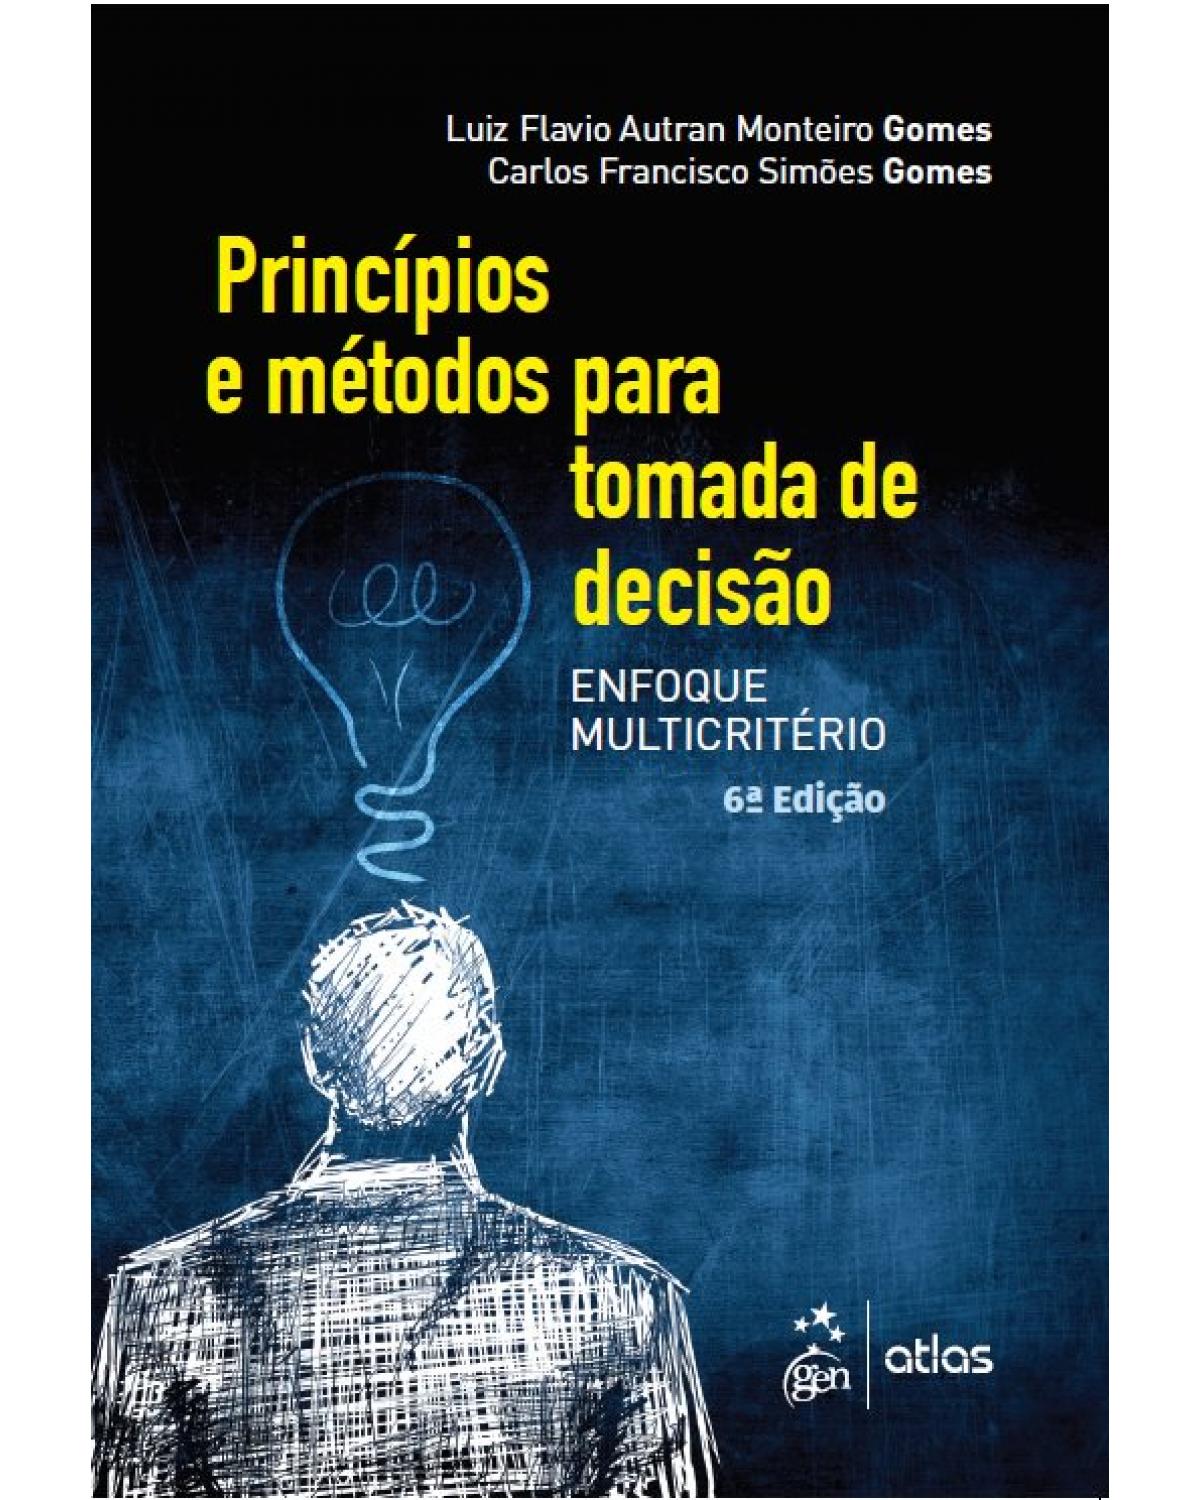 Princípios e métodos para tomada de decisão - enfoque multicritério - 6ª Edição | 2019